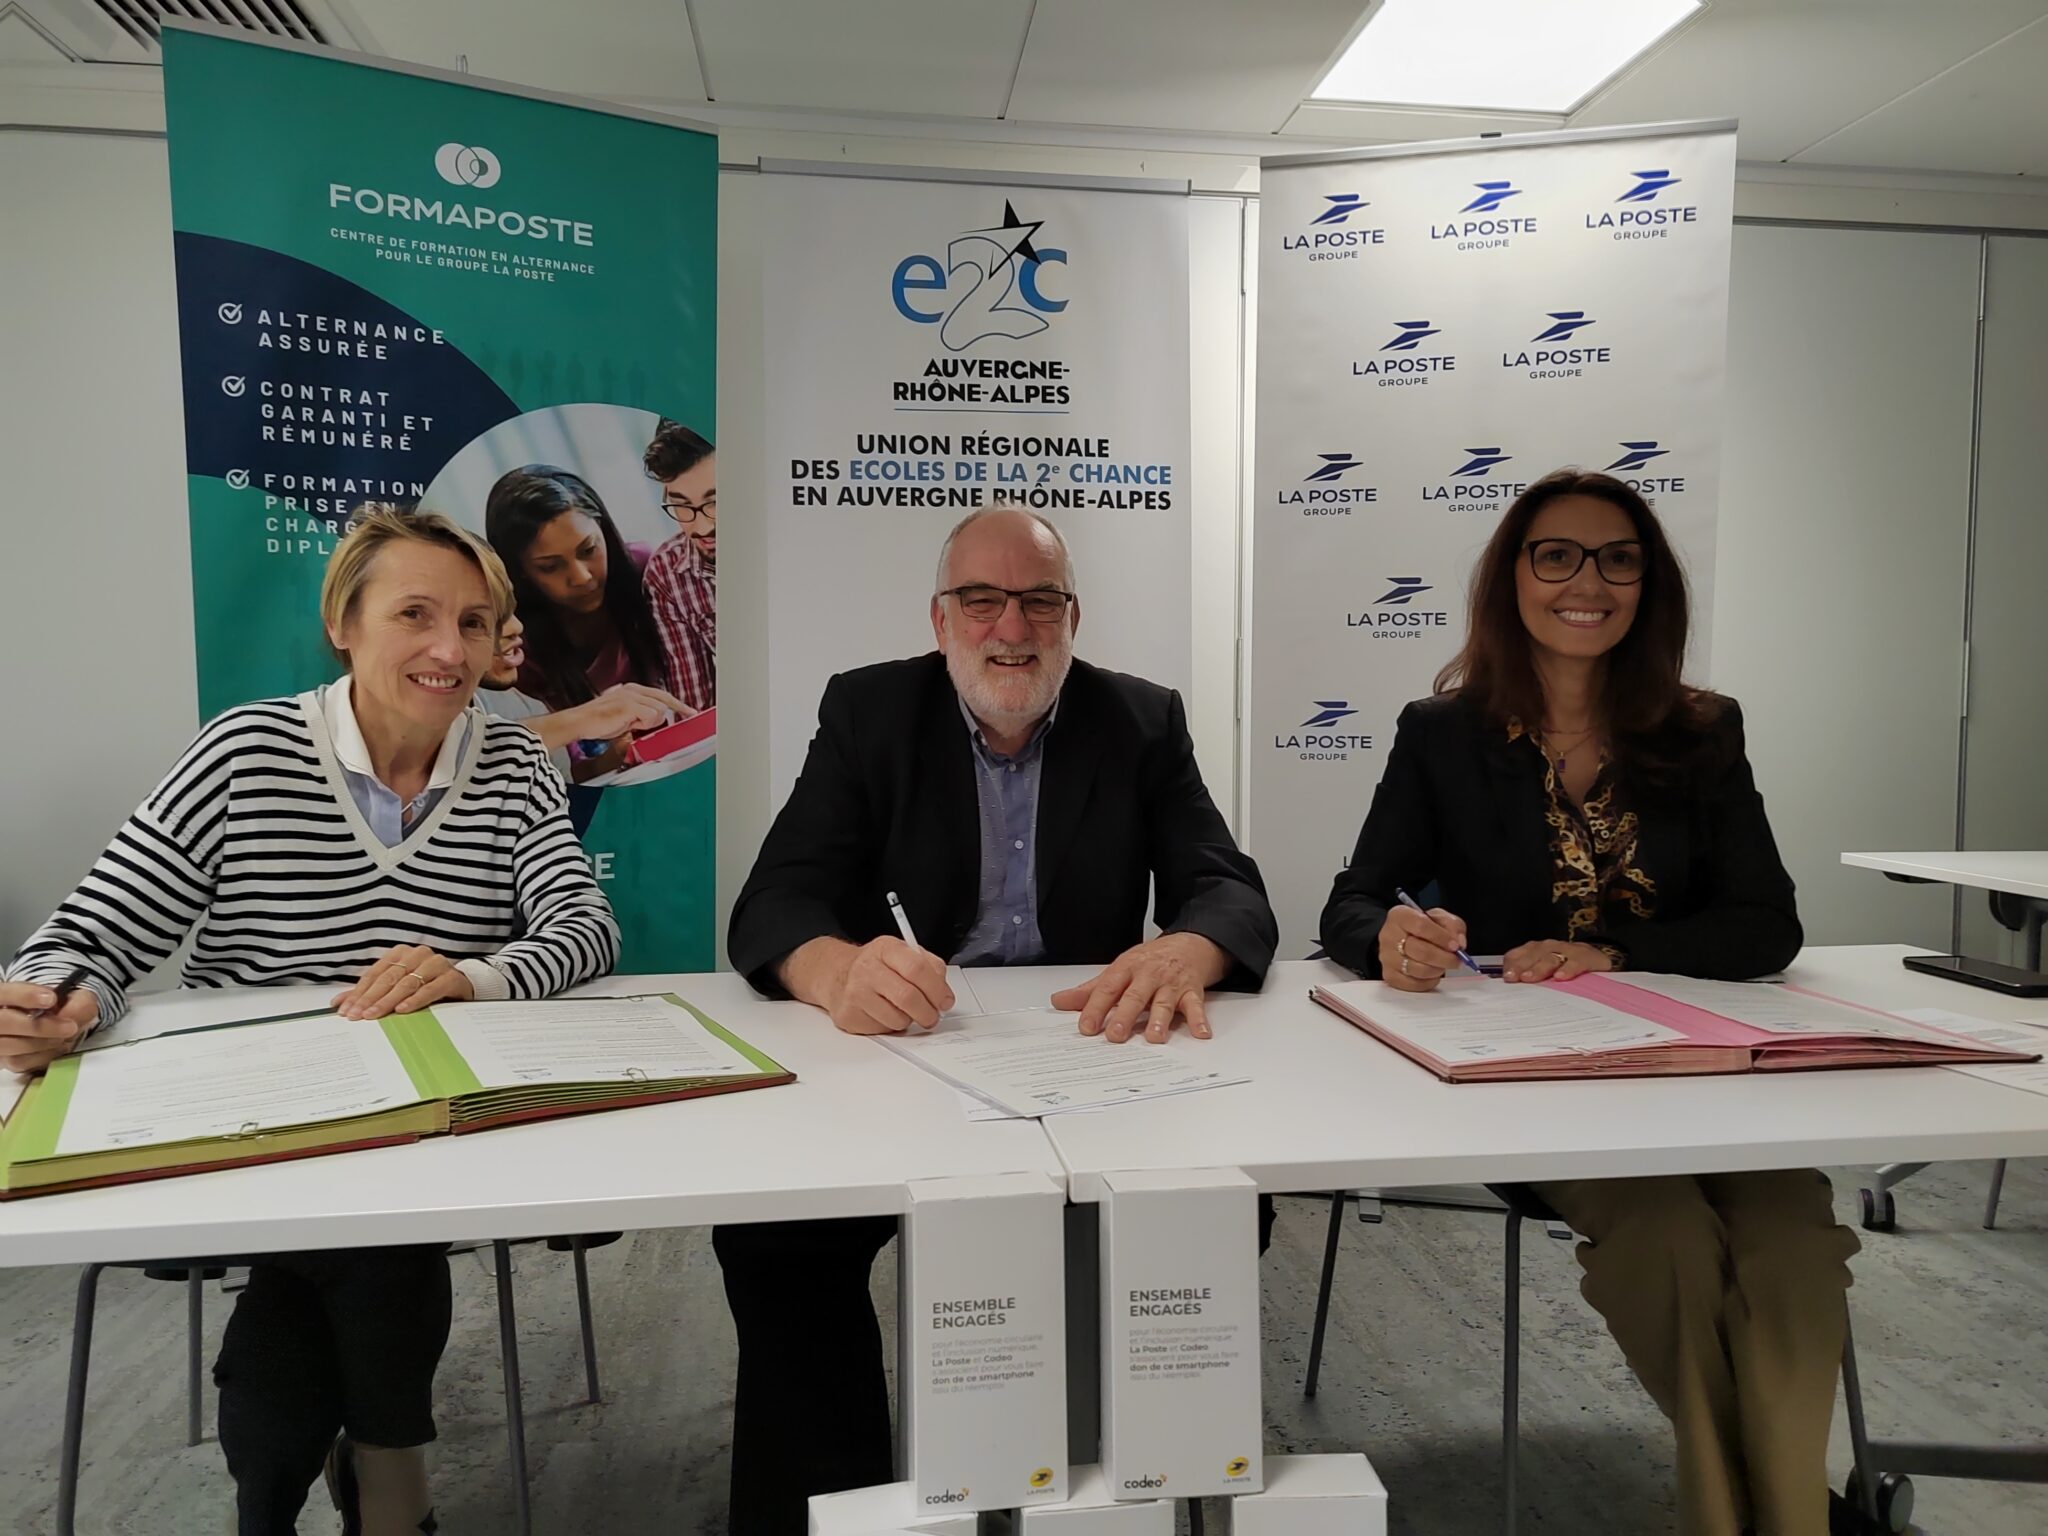 Isabelle Cucchietti (Formaposte), Jean-Roger Régnier (E2C) et Mylène Franceschi (La Poste) ont signé cette convention régionale à Lyon.